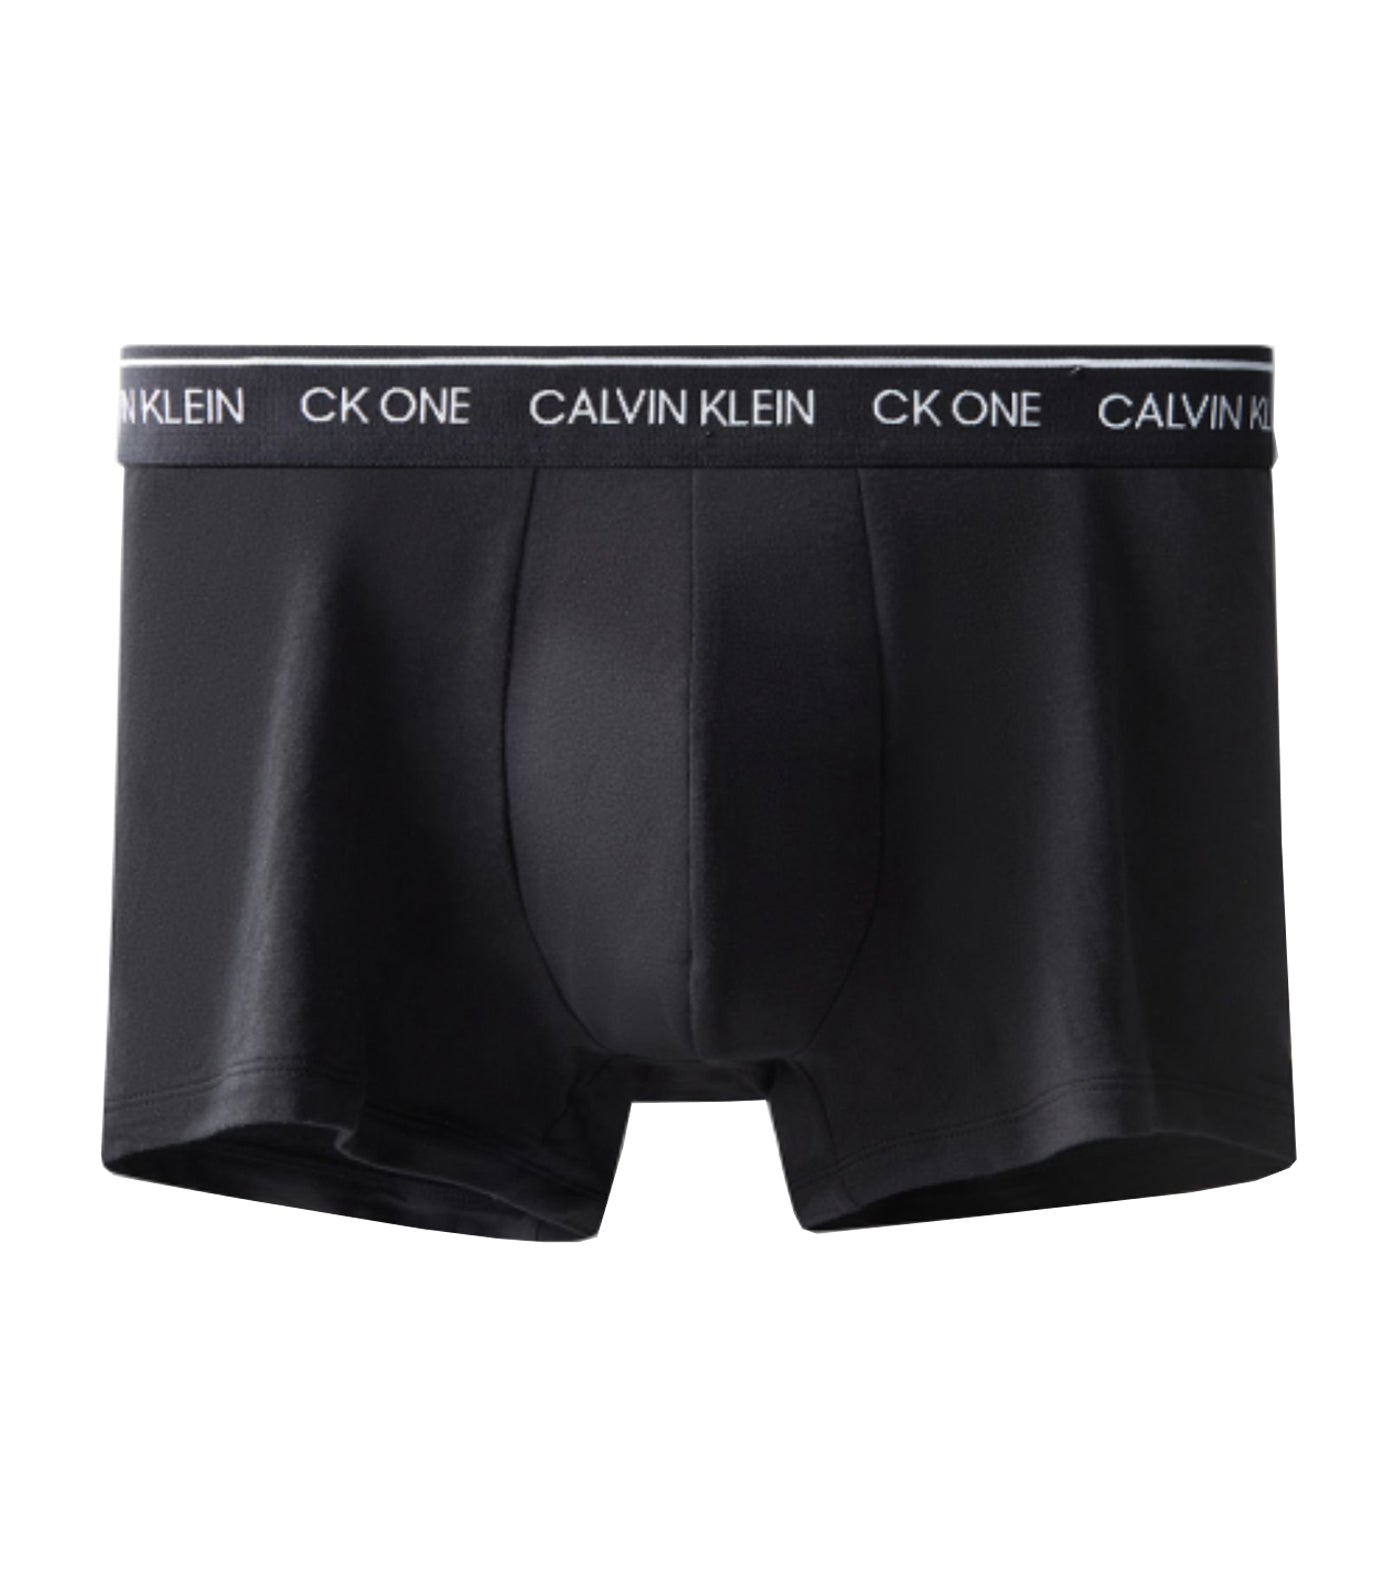 Calvin Klein Underwear CK One Cotton Trunk Black